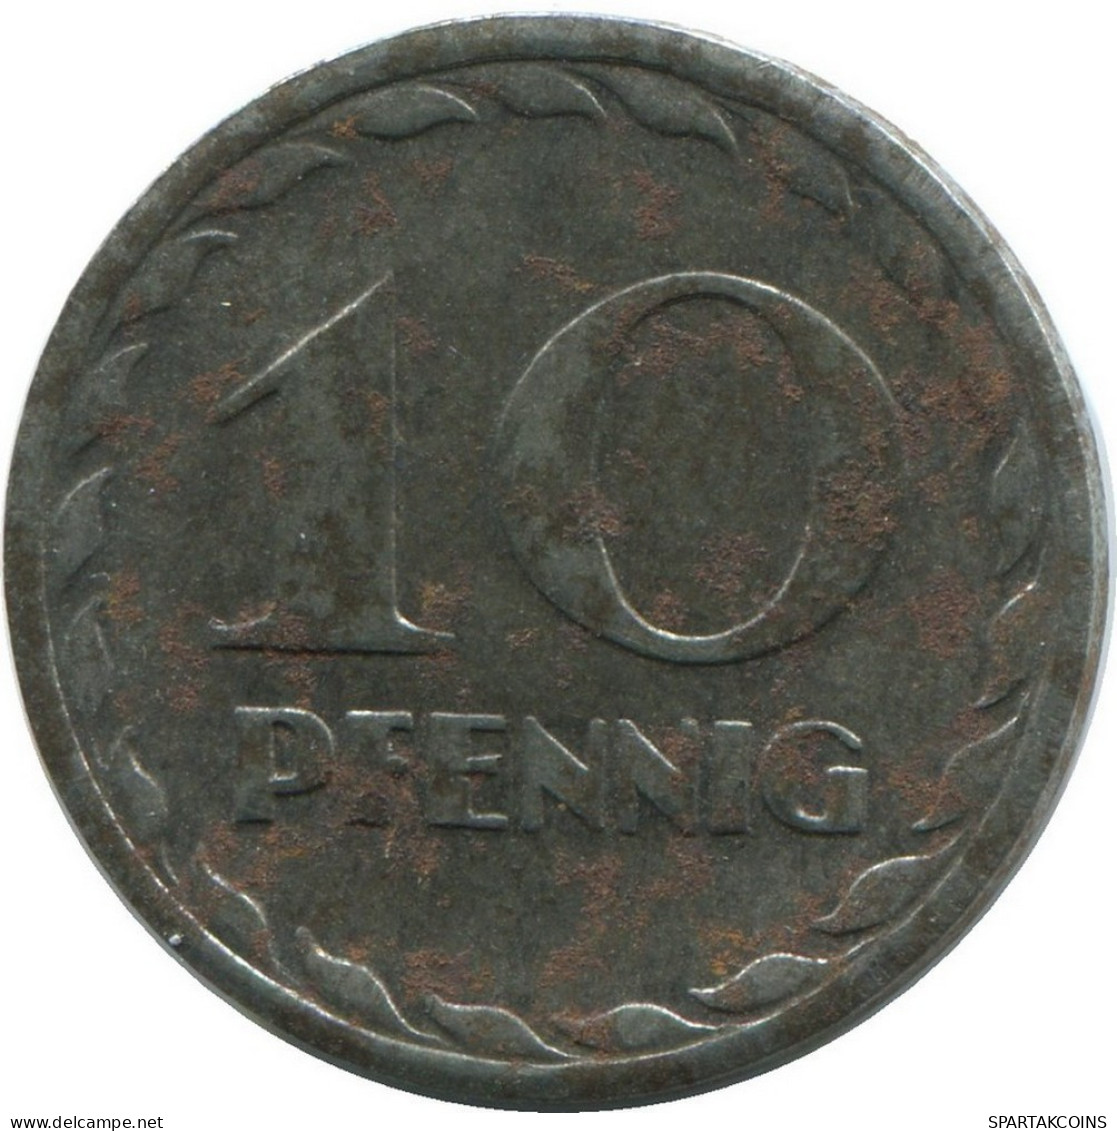 10 PFENNIG 1919 MANNHEIM NOTGELD ALLEMAGNE Pièce GERMANY #DE10509.6.F.A - 10 Rentenpfennig & 10 Reichspfennig